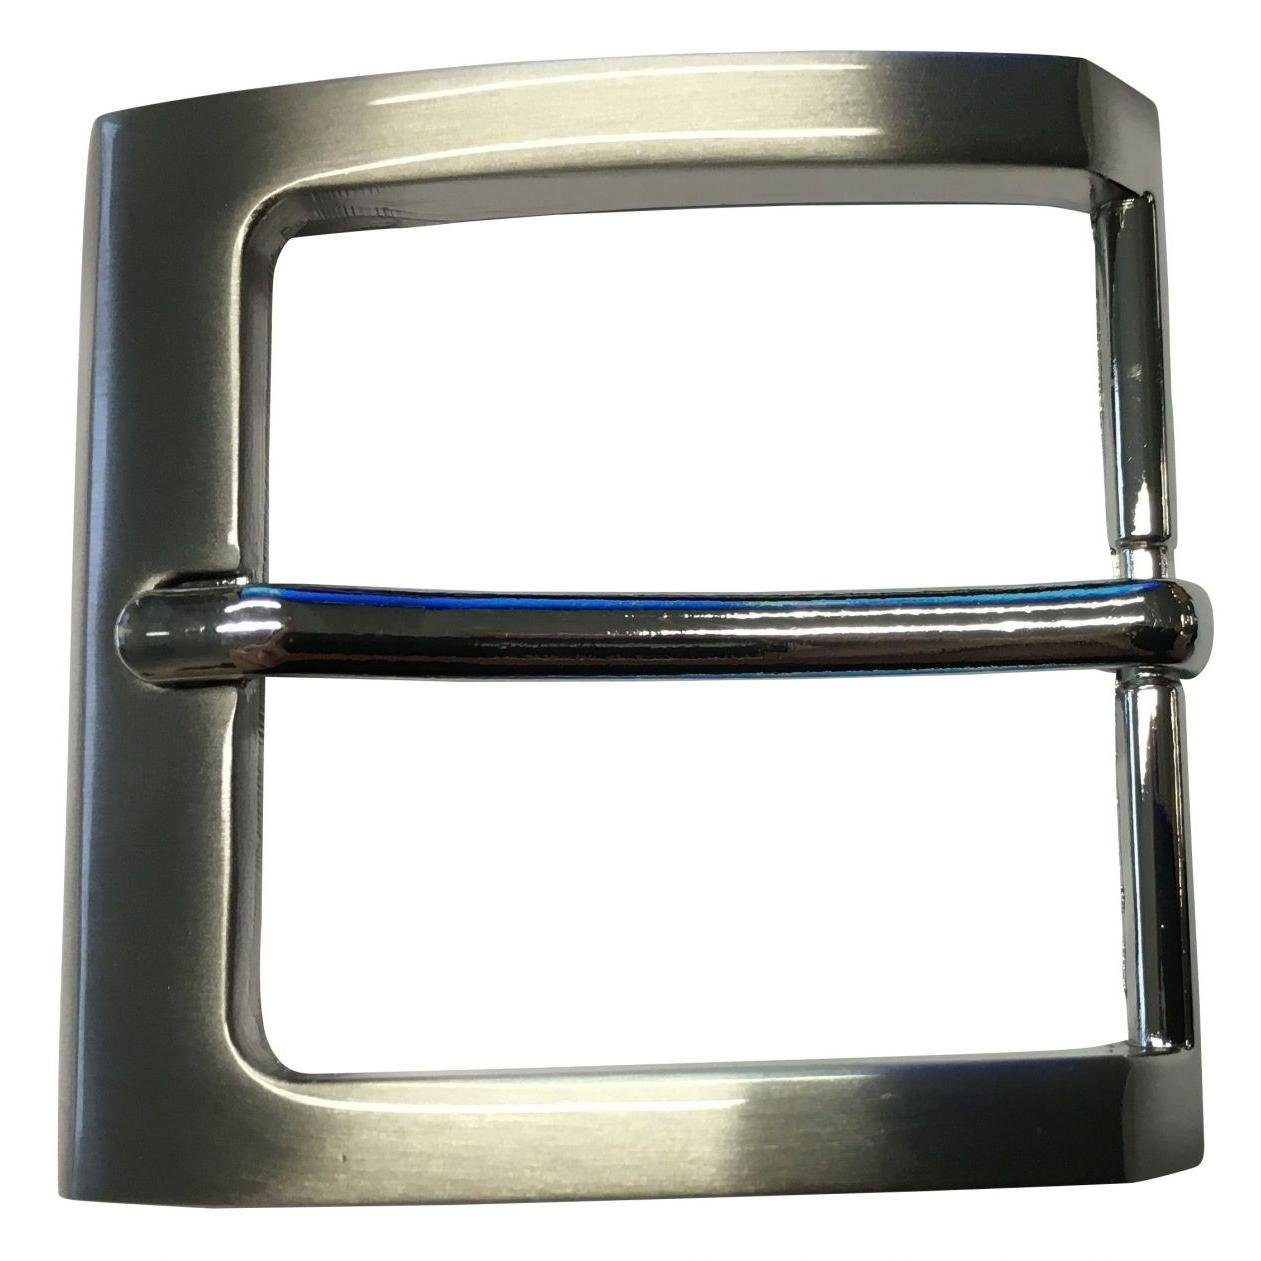 BELTINGER Gürtelschnalle 4,0 cm - Wechselschließe Gürtelschließe 40mm - Dorn-Schließe - Gürtel Silber, Matt